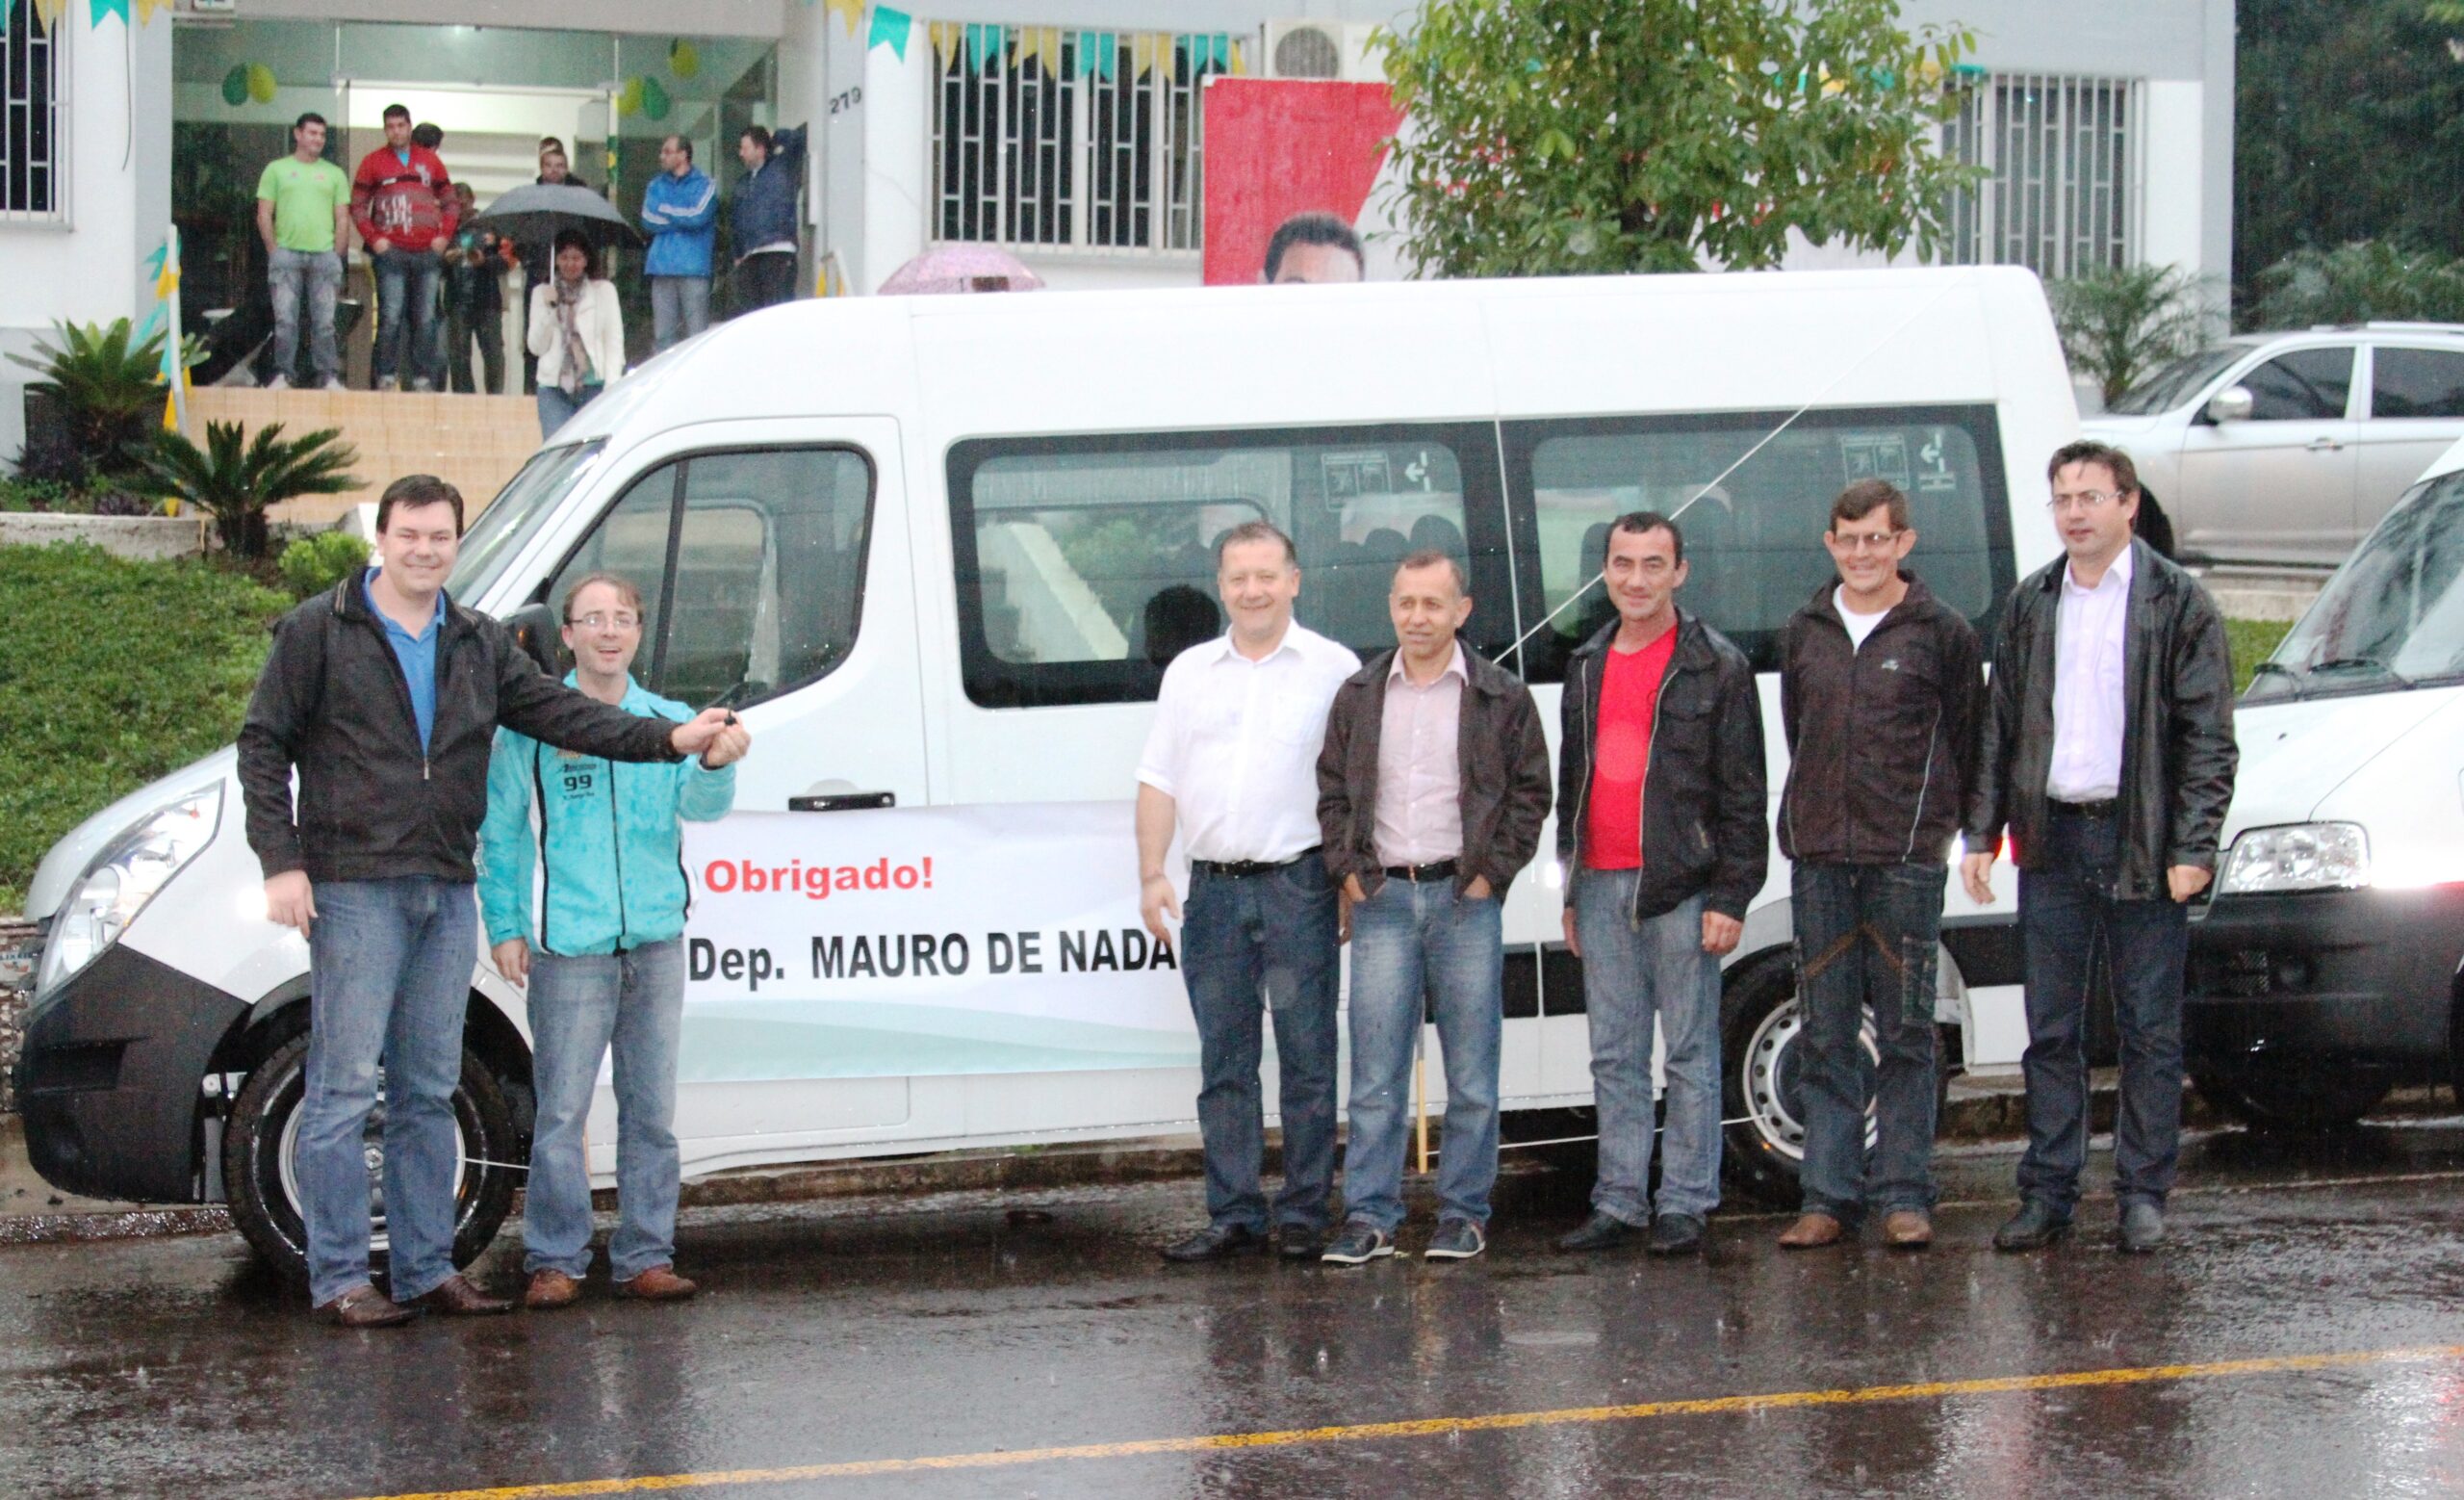 Alex Dal Piva, assessor do Deputado Estadual Mauro de Nadal, esteve fazendo a entrega oficial da van para o município de Saudades